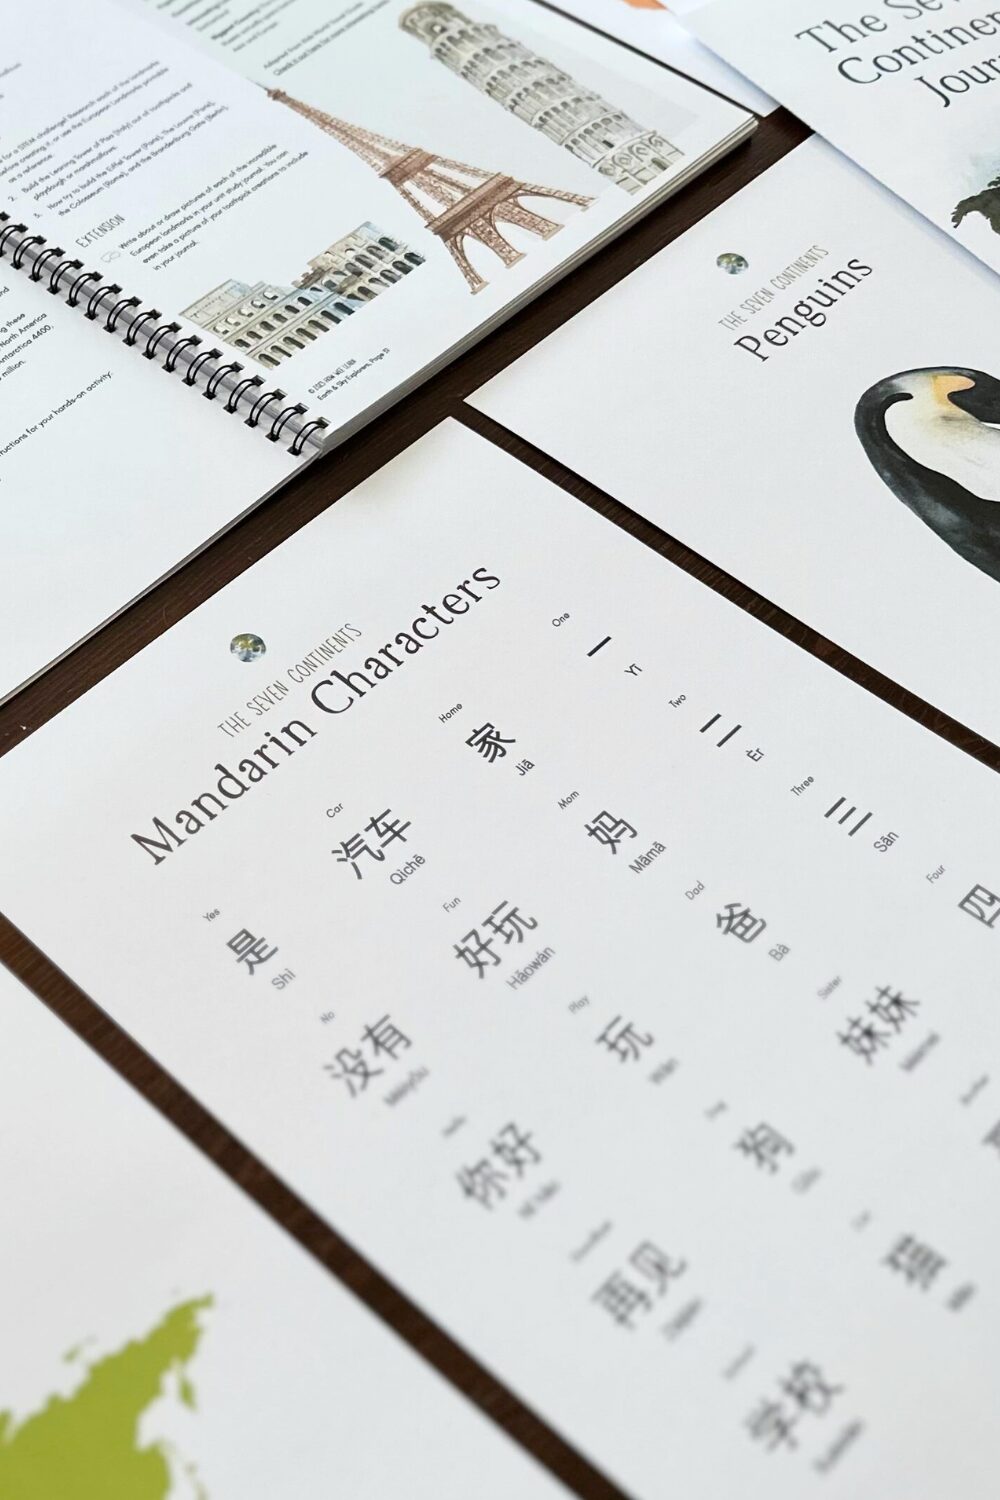 The Seven Continents Family Unit Study Mandarin Symbols